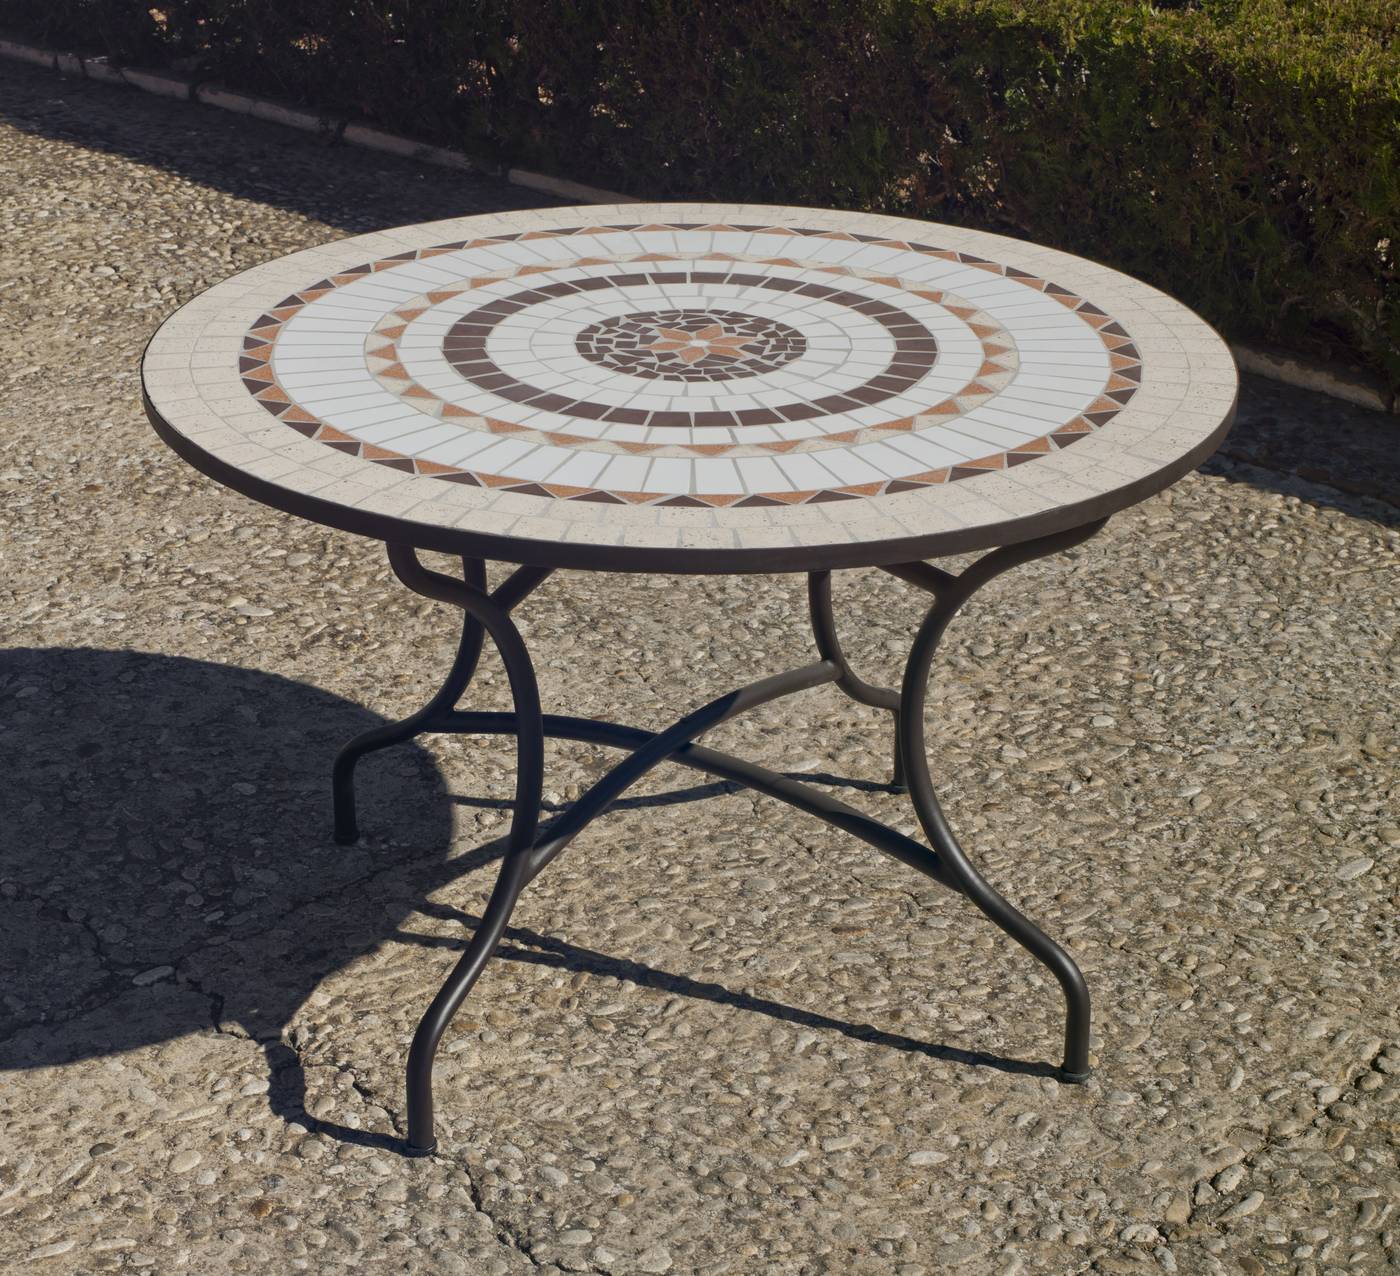 Mesa mosaico redonda para jardín. Estructura de acero forjado con patas reforzadas y panel de mosaico